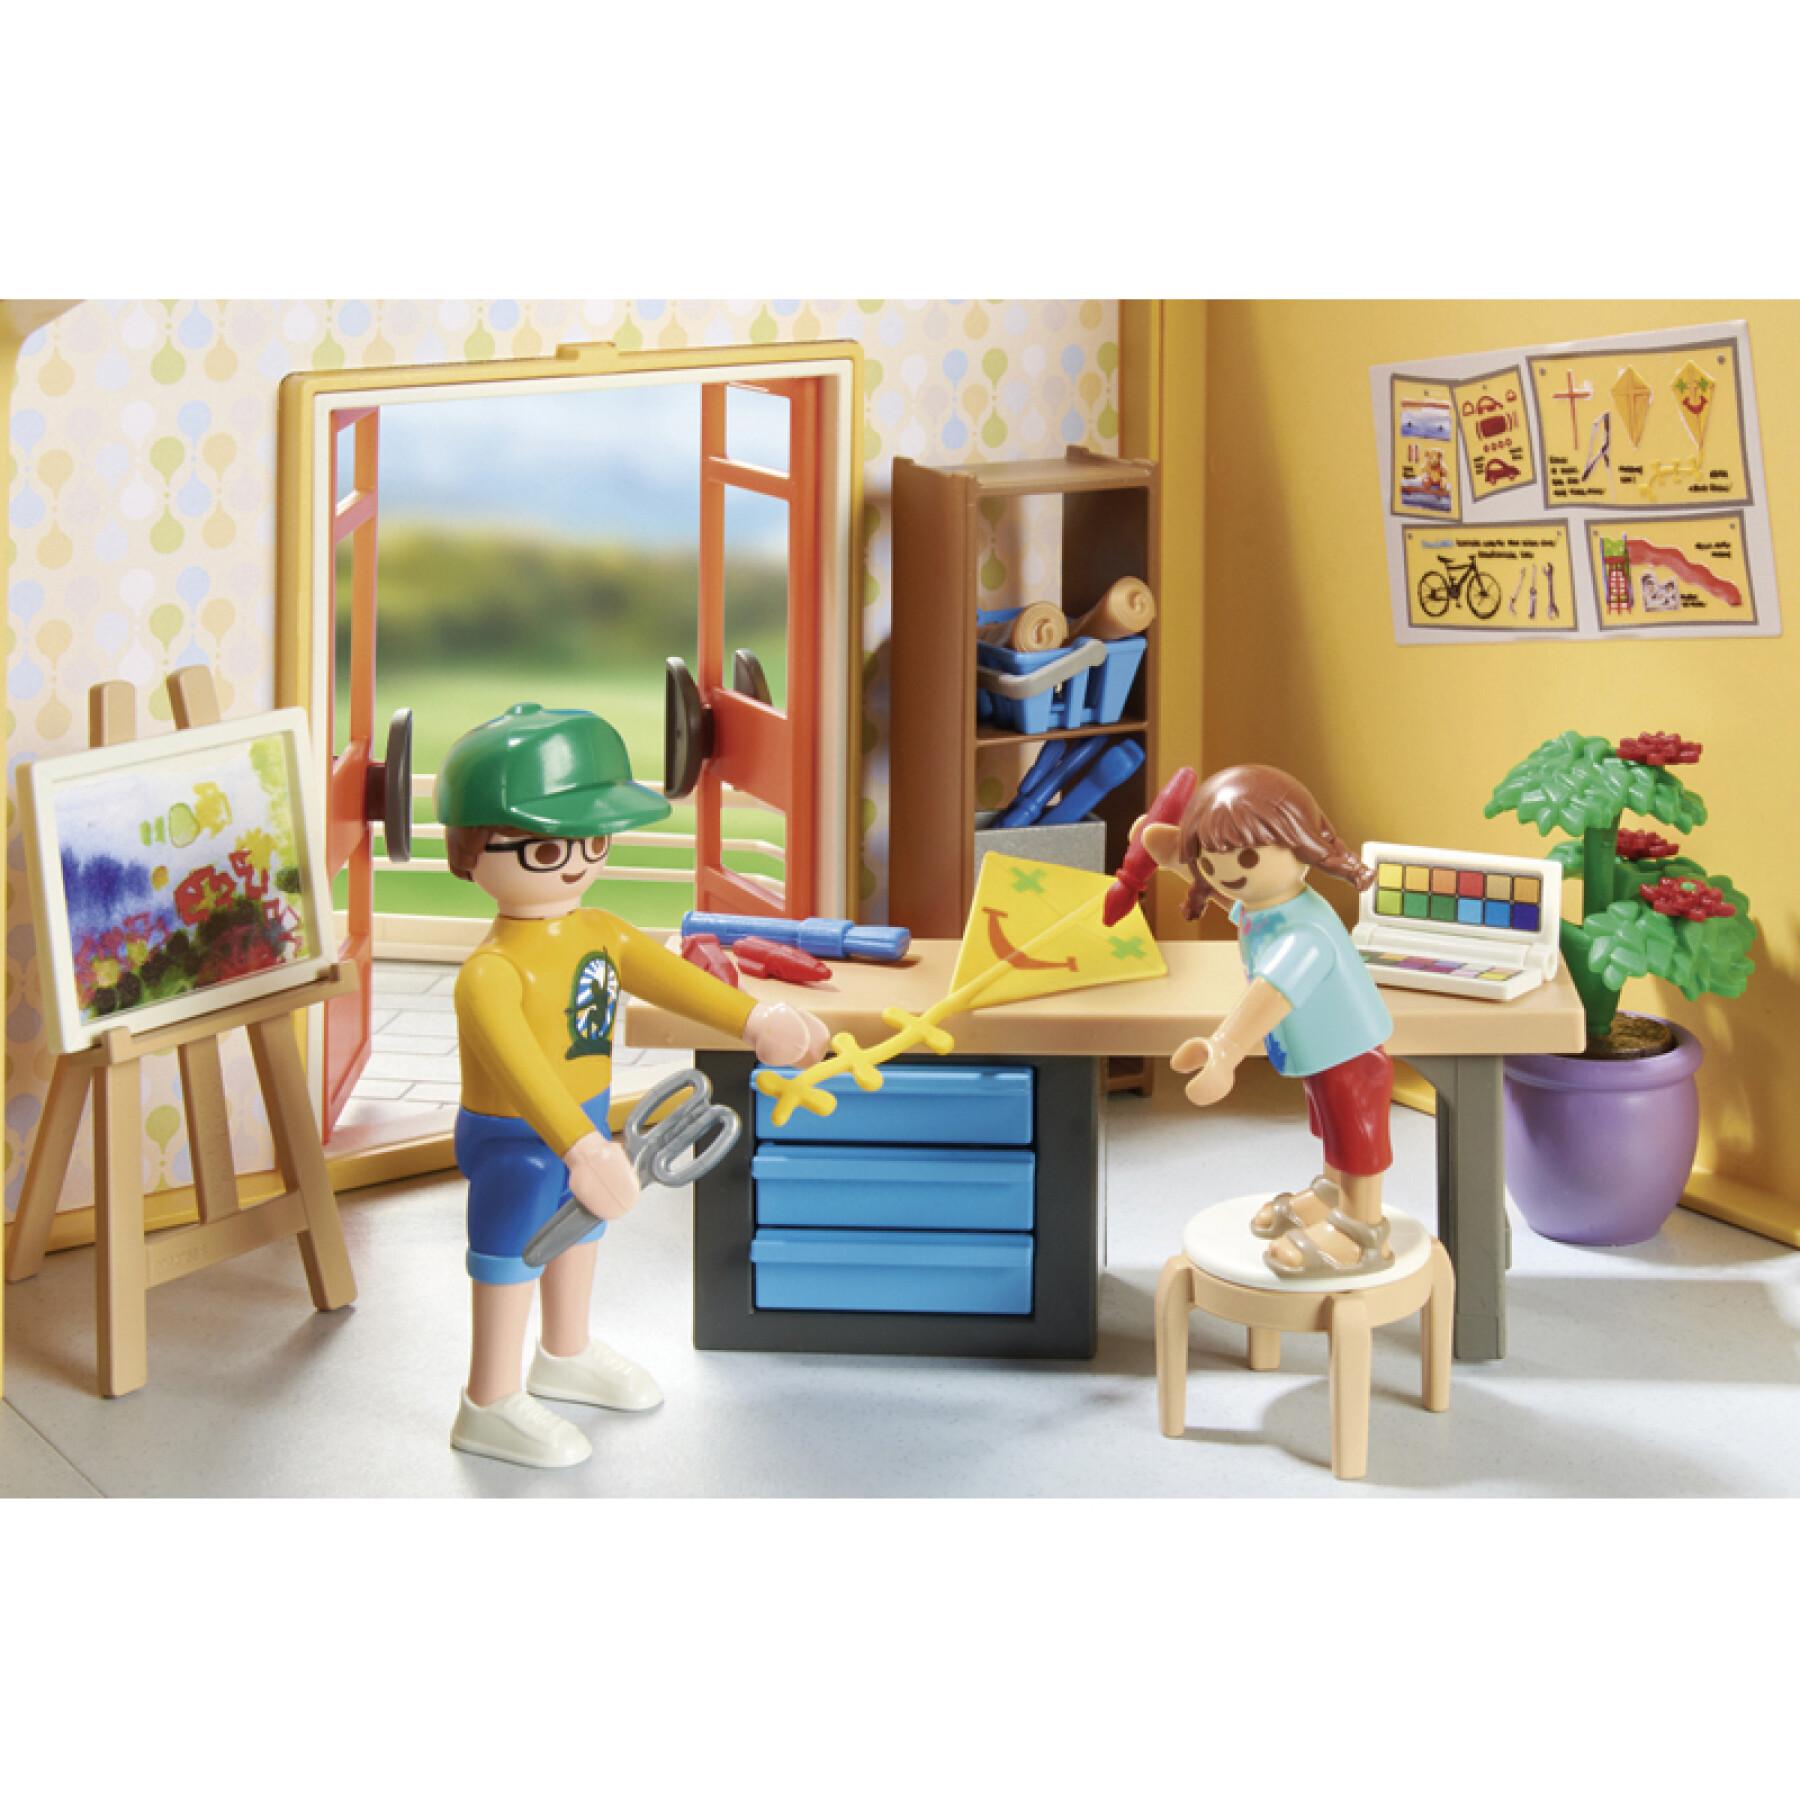 Figurine zusätzliche ausgebaute Etage für Haus Playmobil